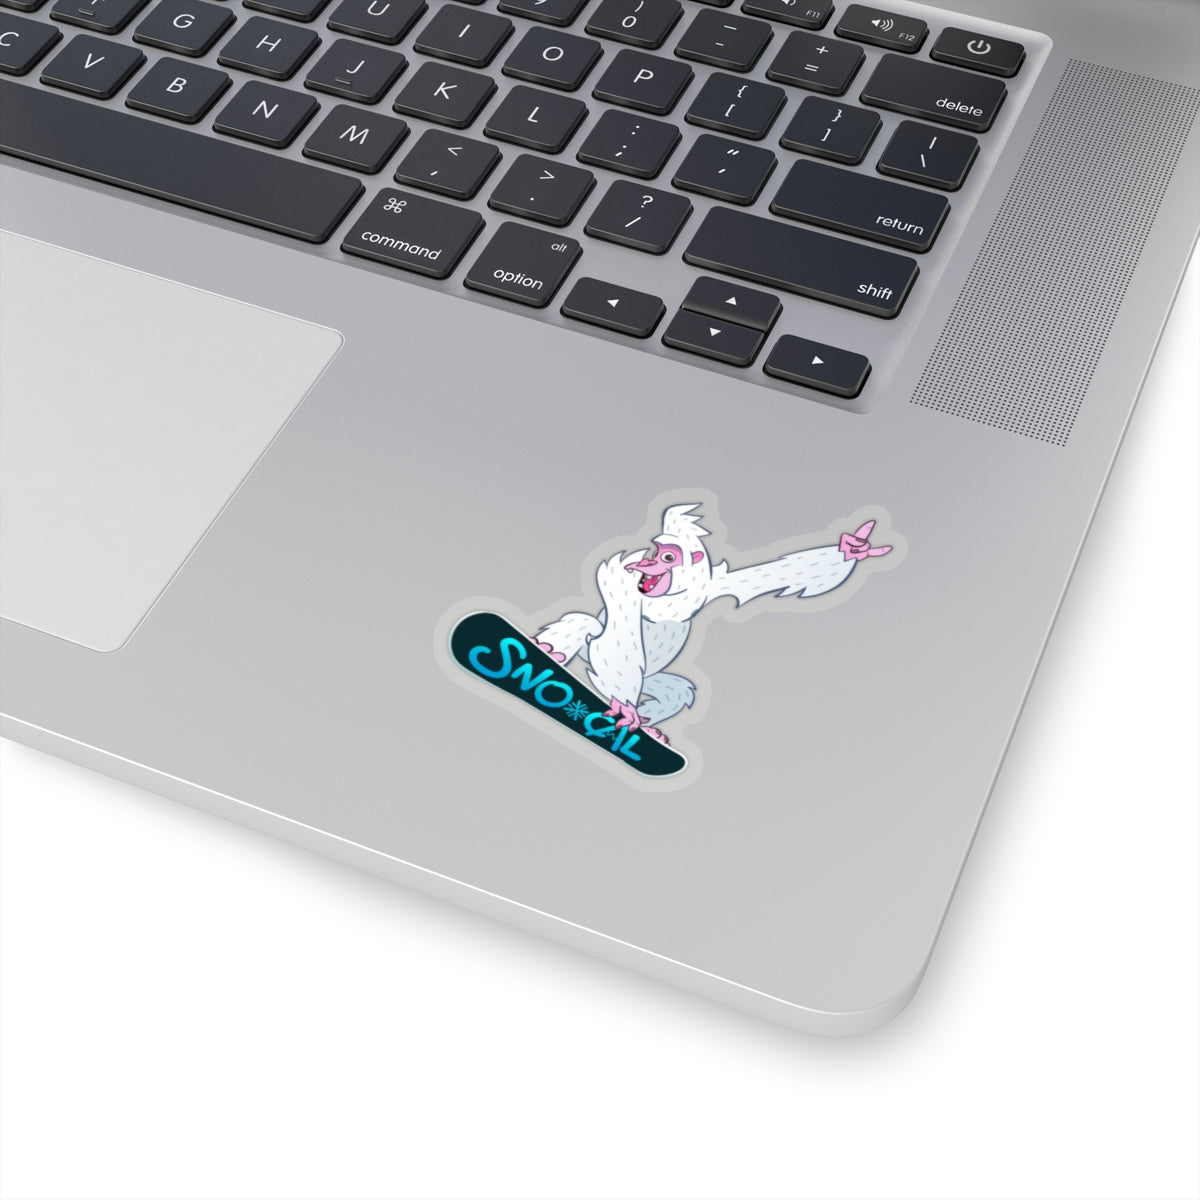 Snorilla Air Grab snowboard sticker - Sno Cal